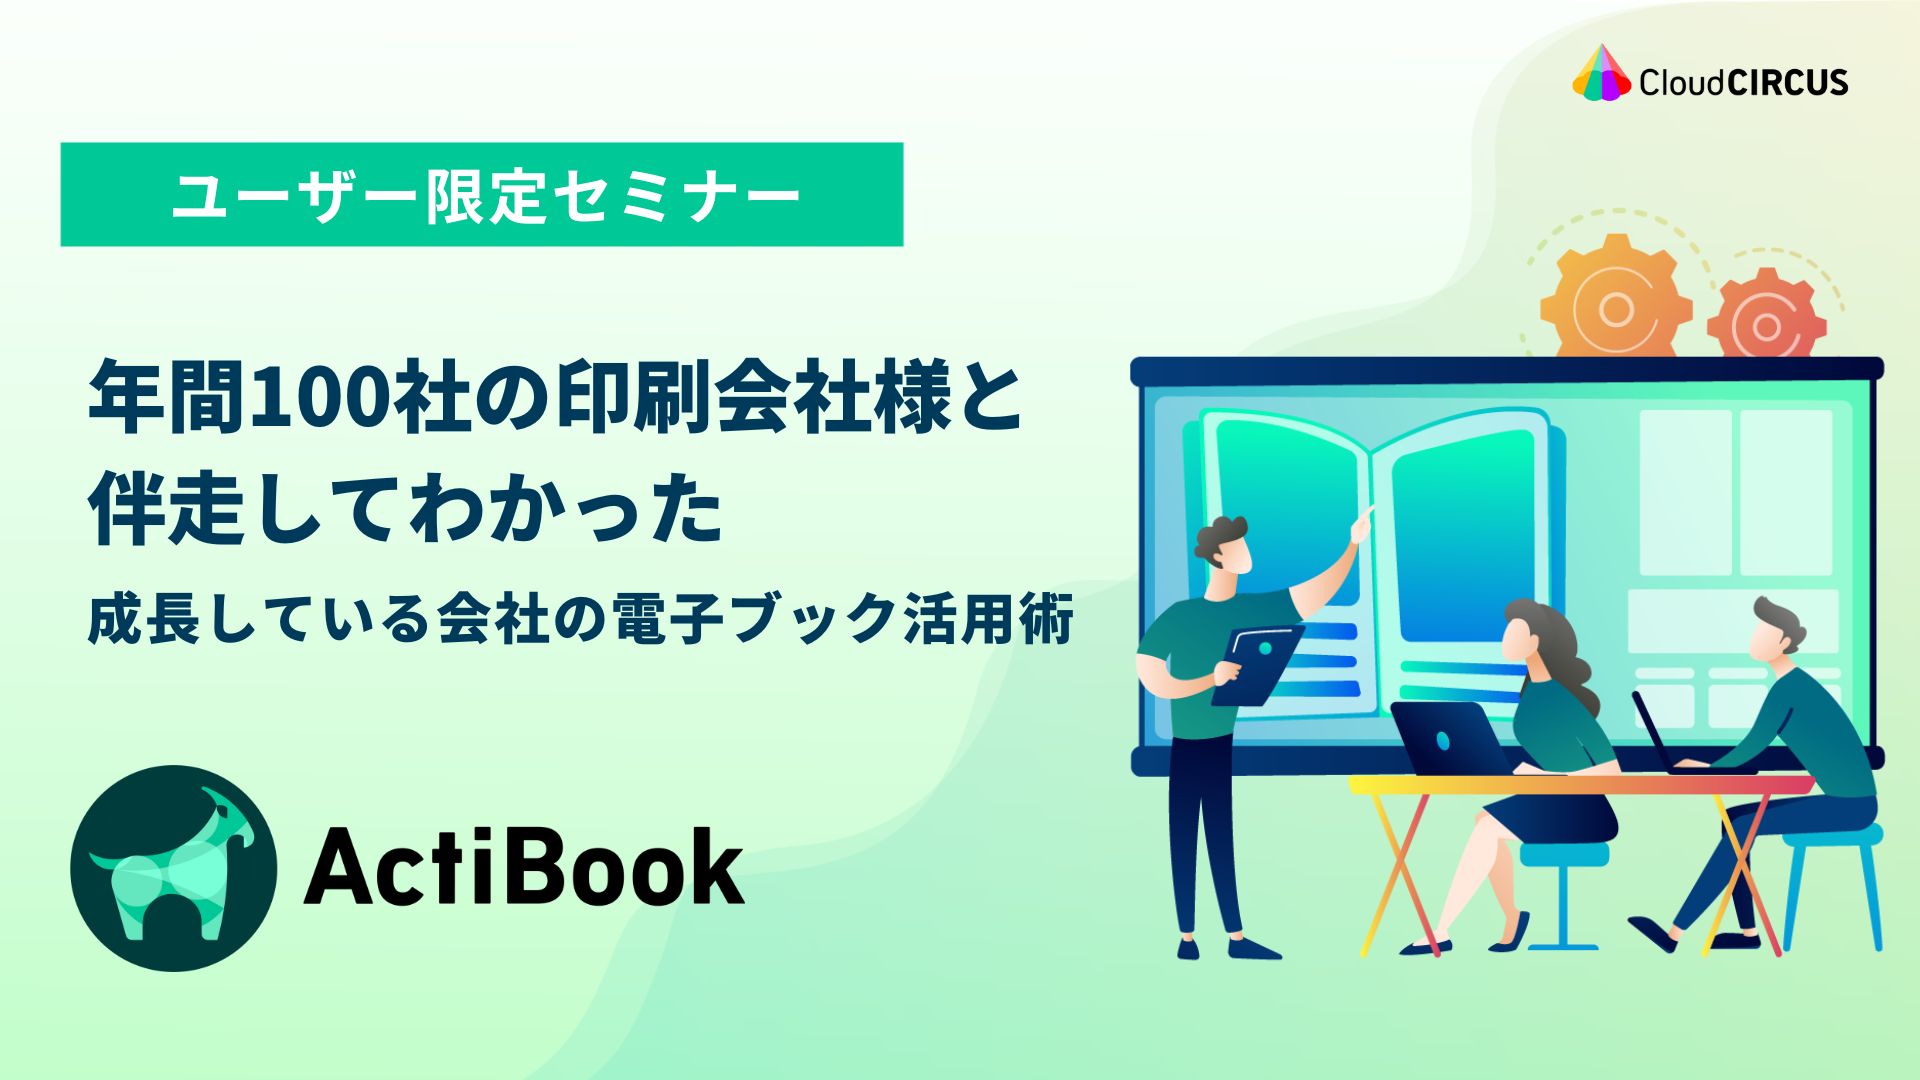 【2月13日(火)】［ActiBook契約社様限定セミナー］デジタルブックの活用をアップデート！ 顧客検討を促進するための活用方法とは？